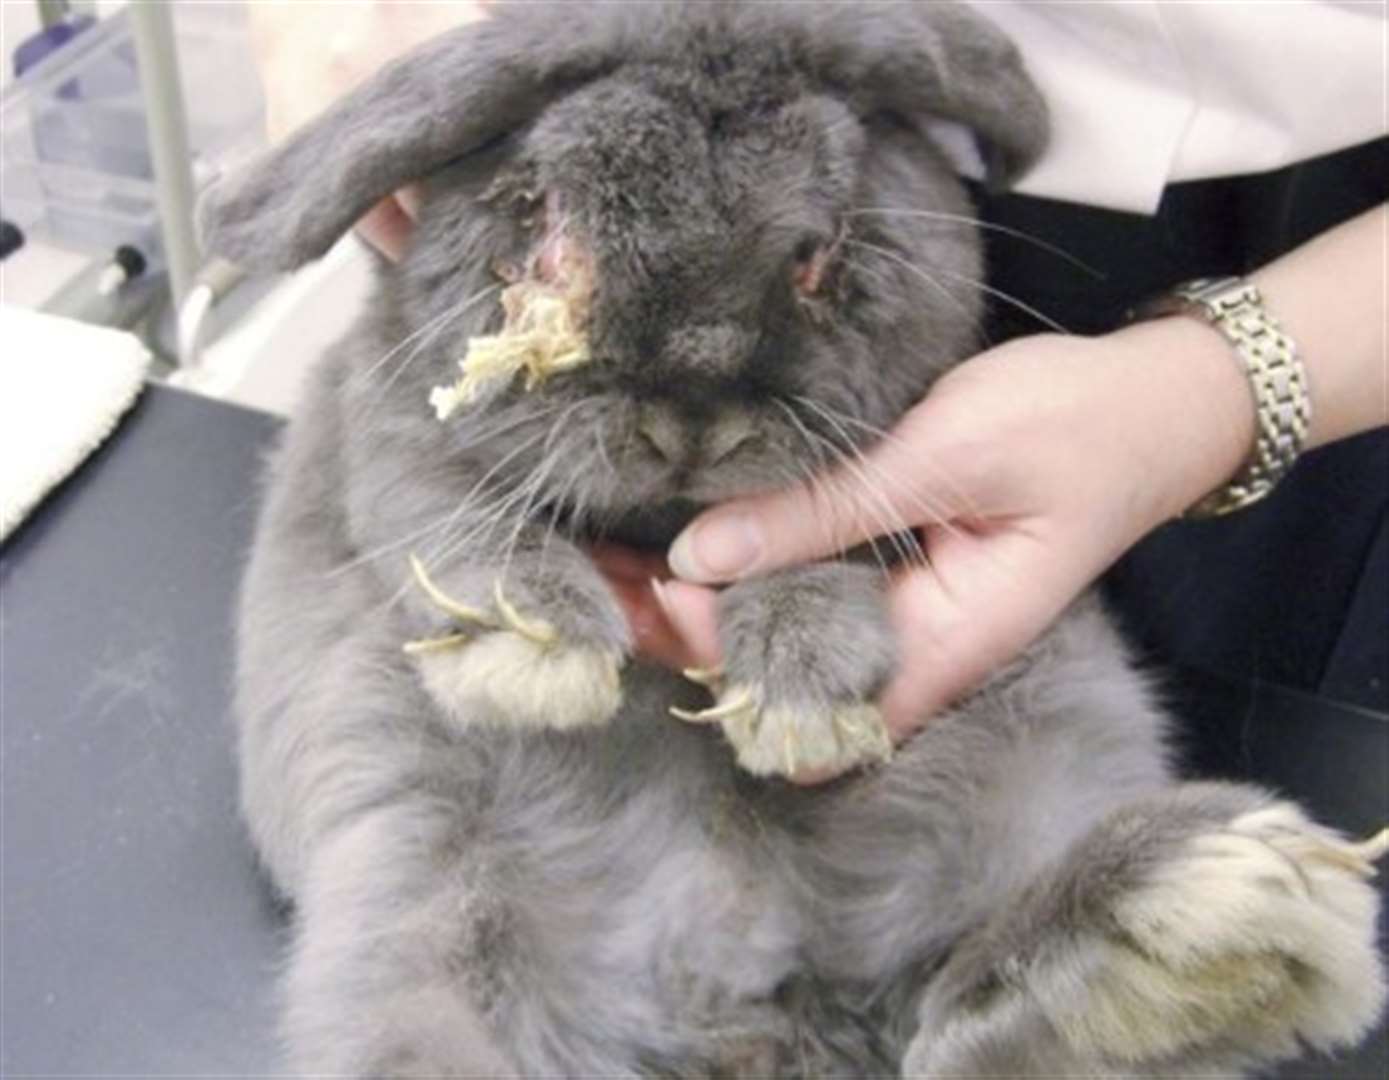 Jail warning for rabbit owner